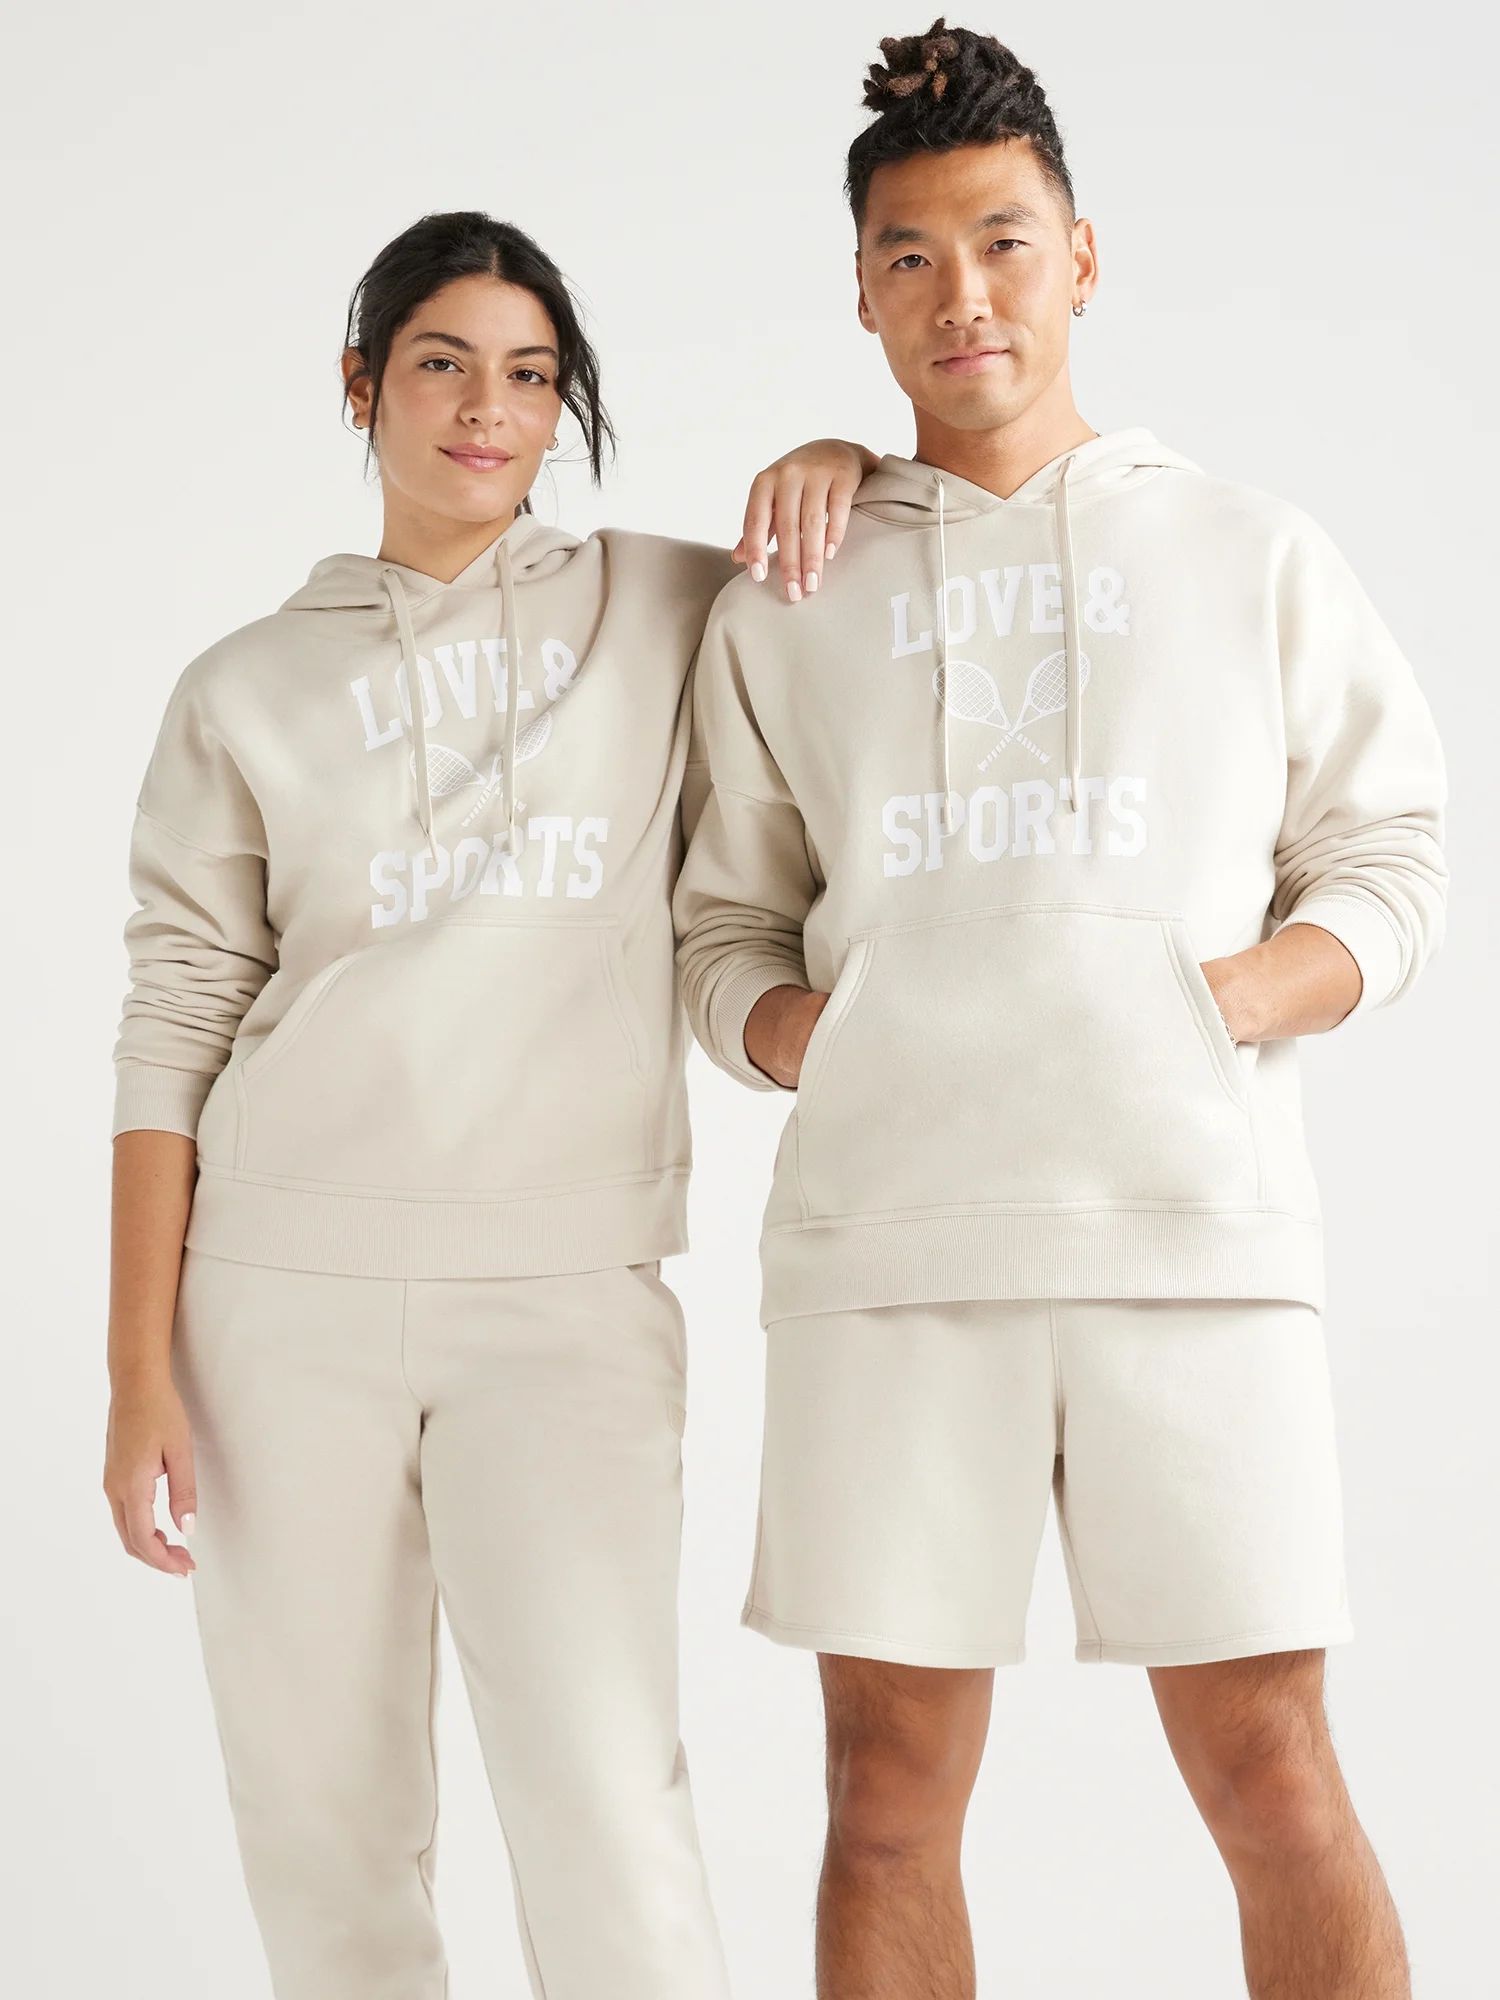 Love & Sports All Gender Pullover Graphic Hoodie, S-XXXL | Walmart (US)